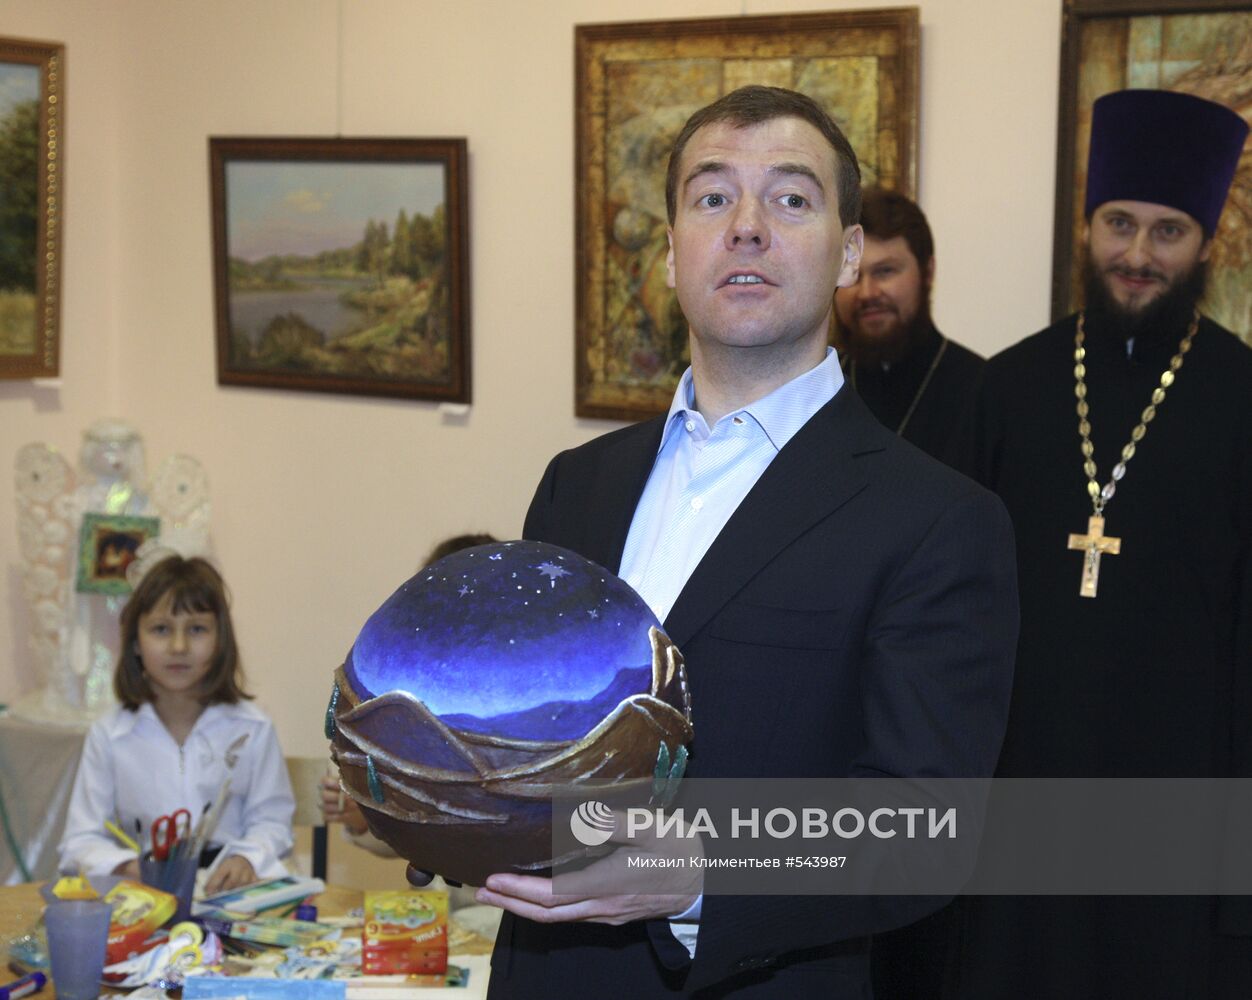 Рабочая поездка Д.Медведева в подмосковное Видное